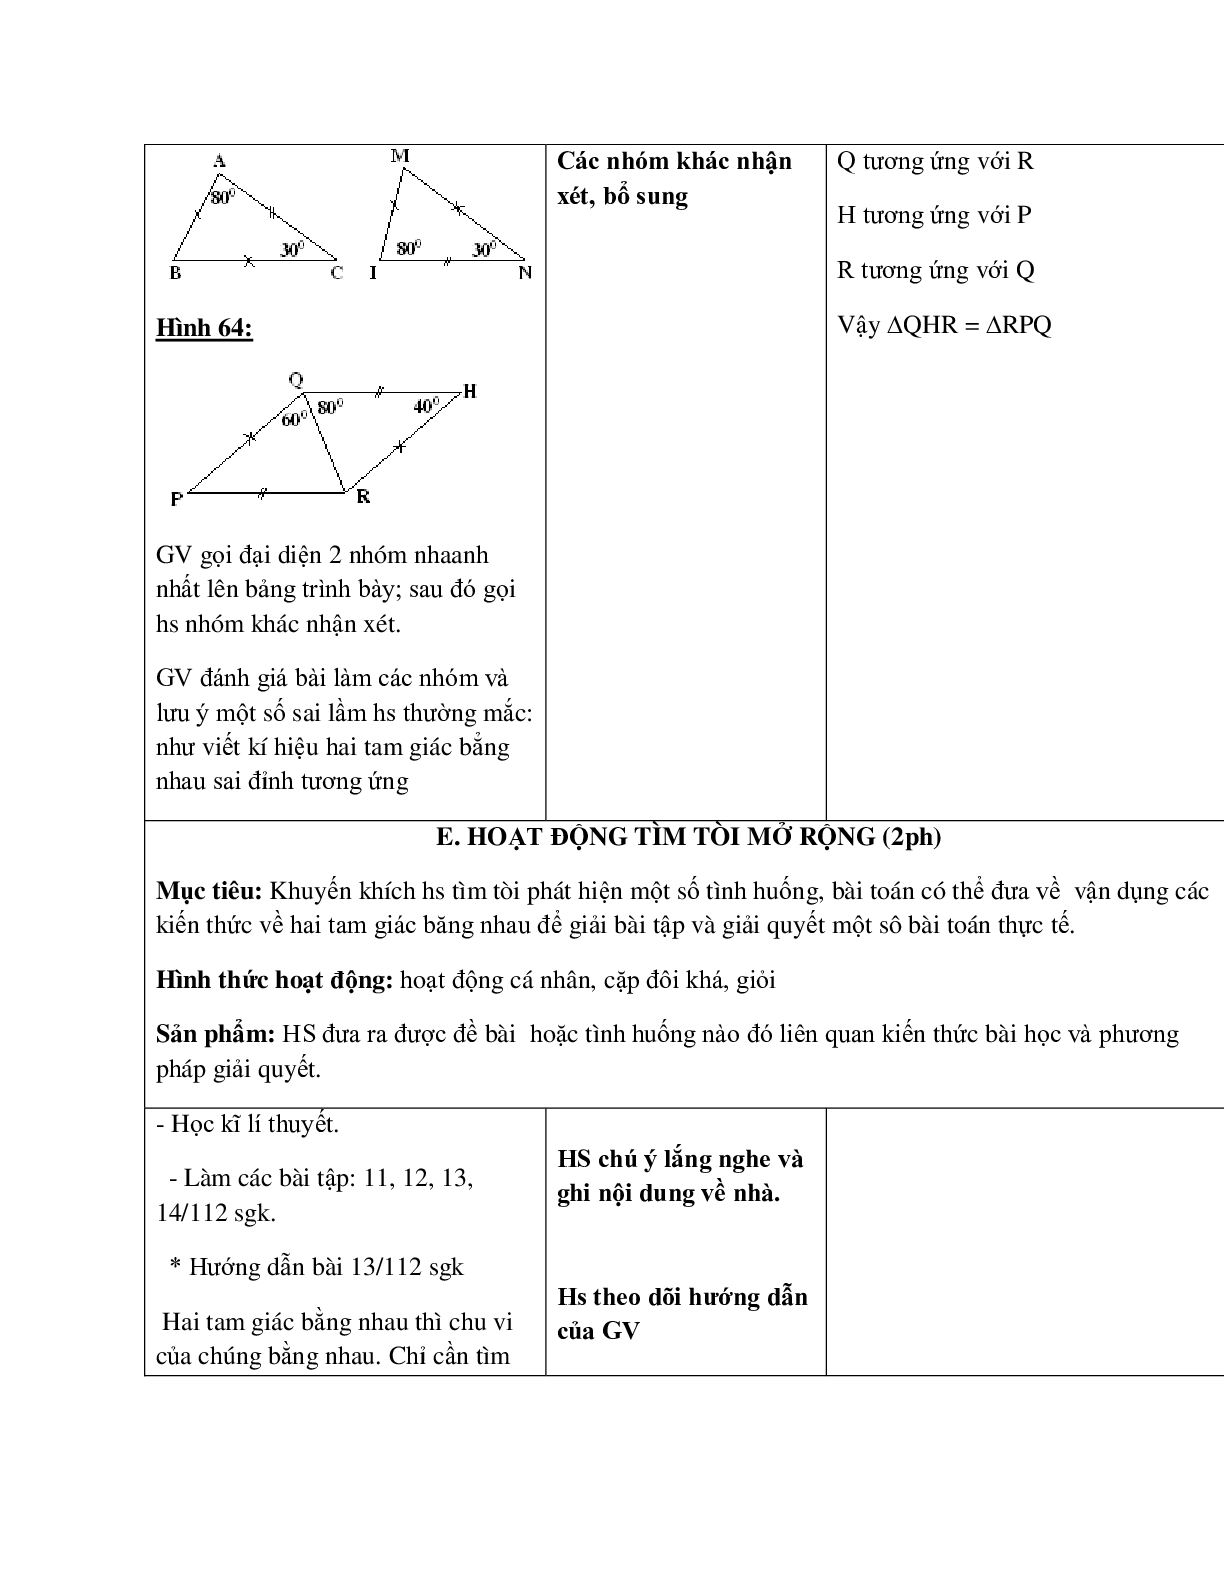 Giáo án Toán học 7 bài 2: Hai tam giác bằng nhau hay nhất (trang 5)